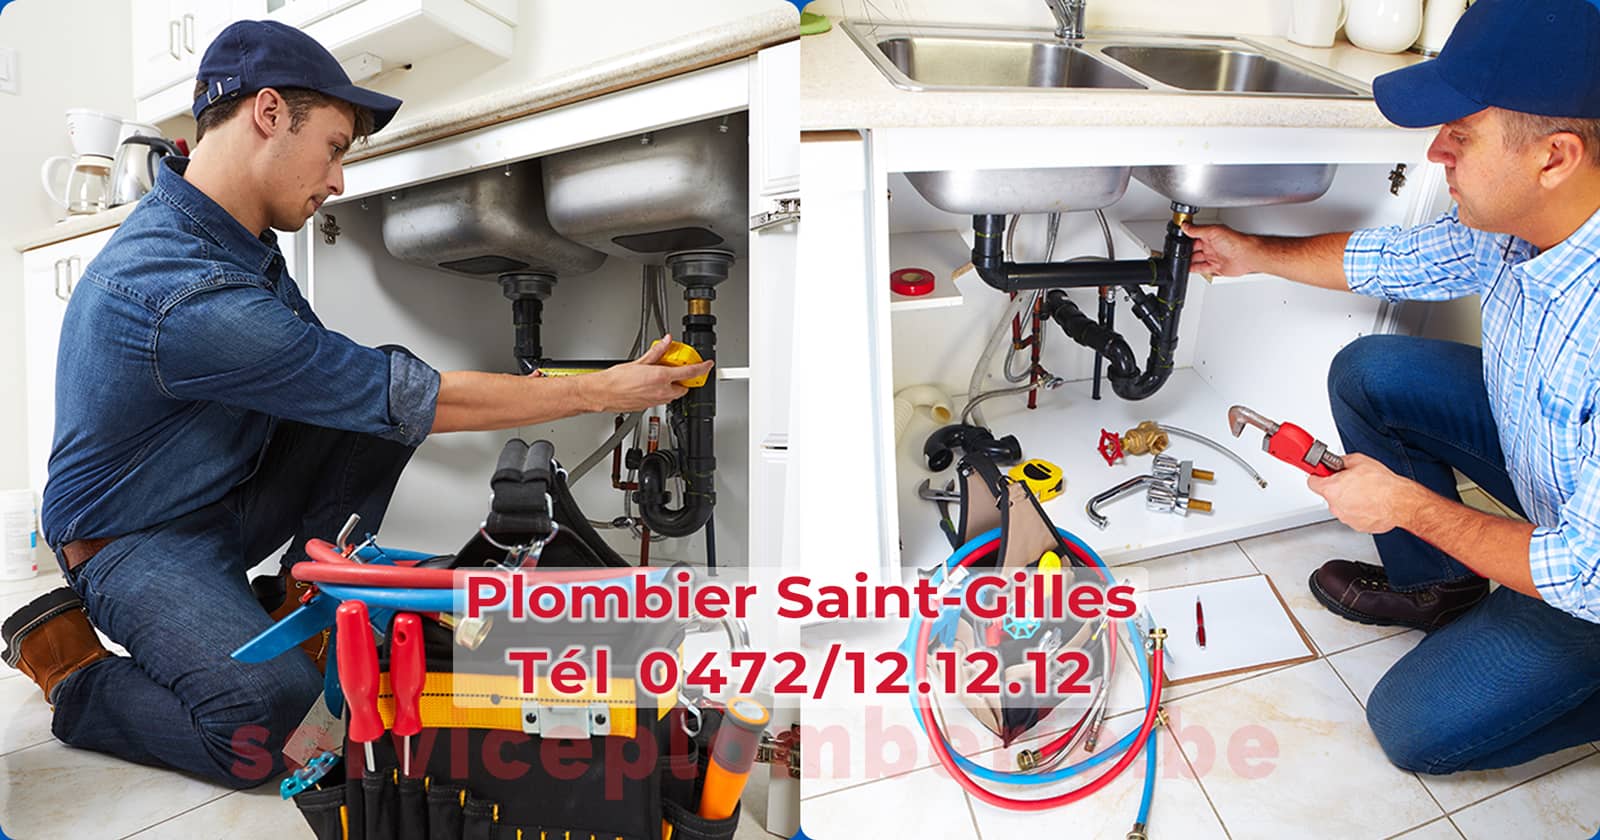 Plombier Saint-Gilles Agréé Professionnel Service Plomberie Tél 0472/12.12.12